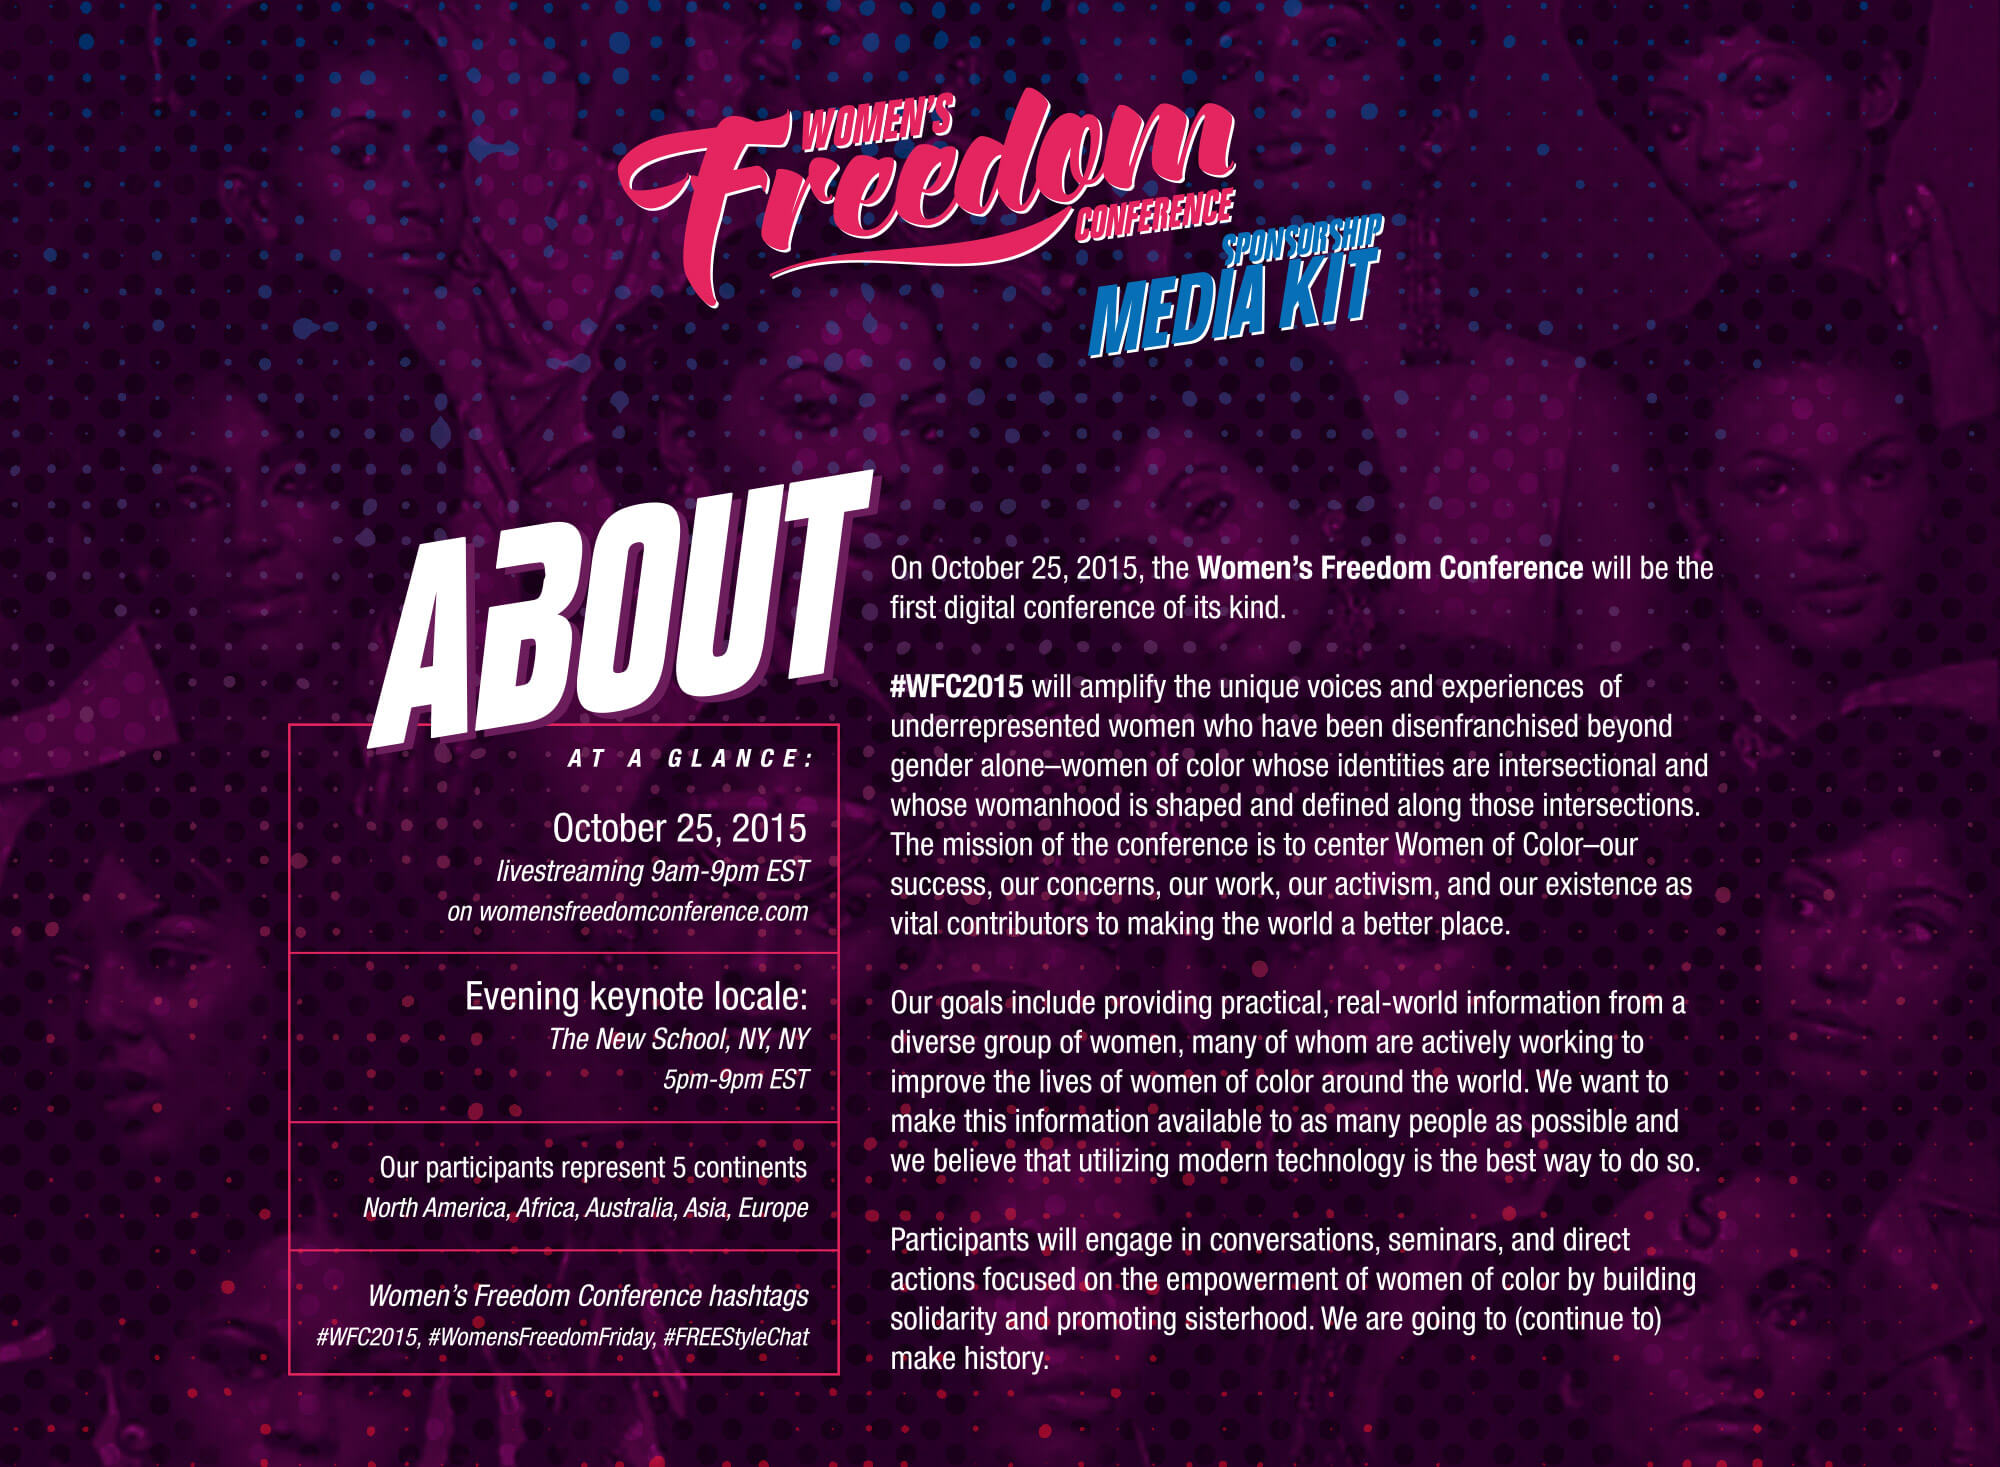 WFC2015 Media Kit